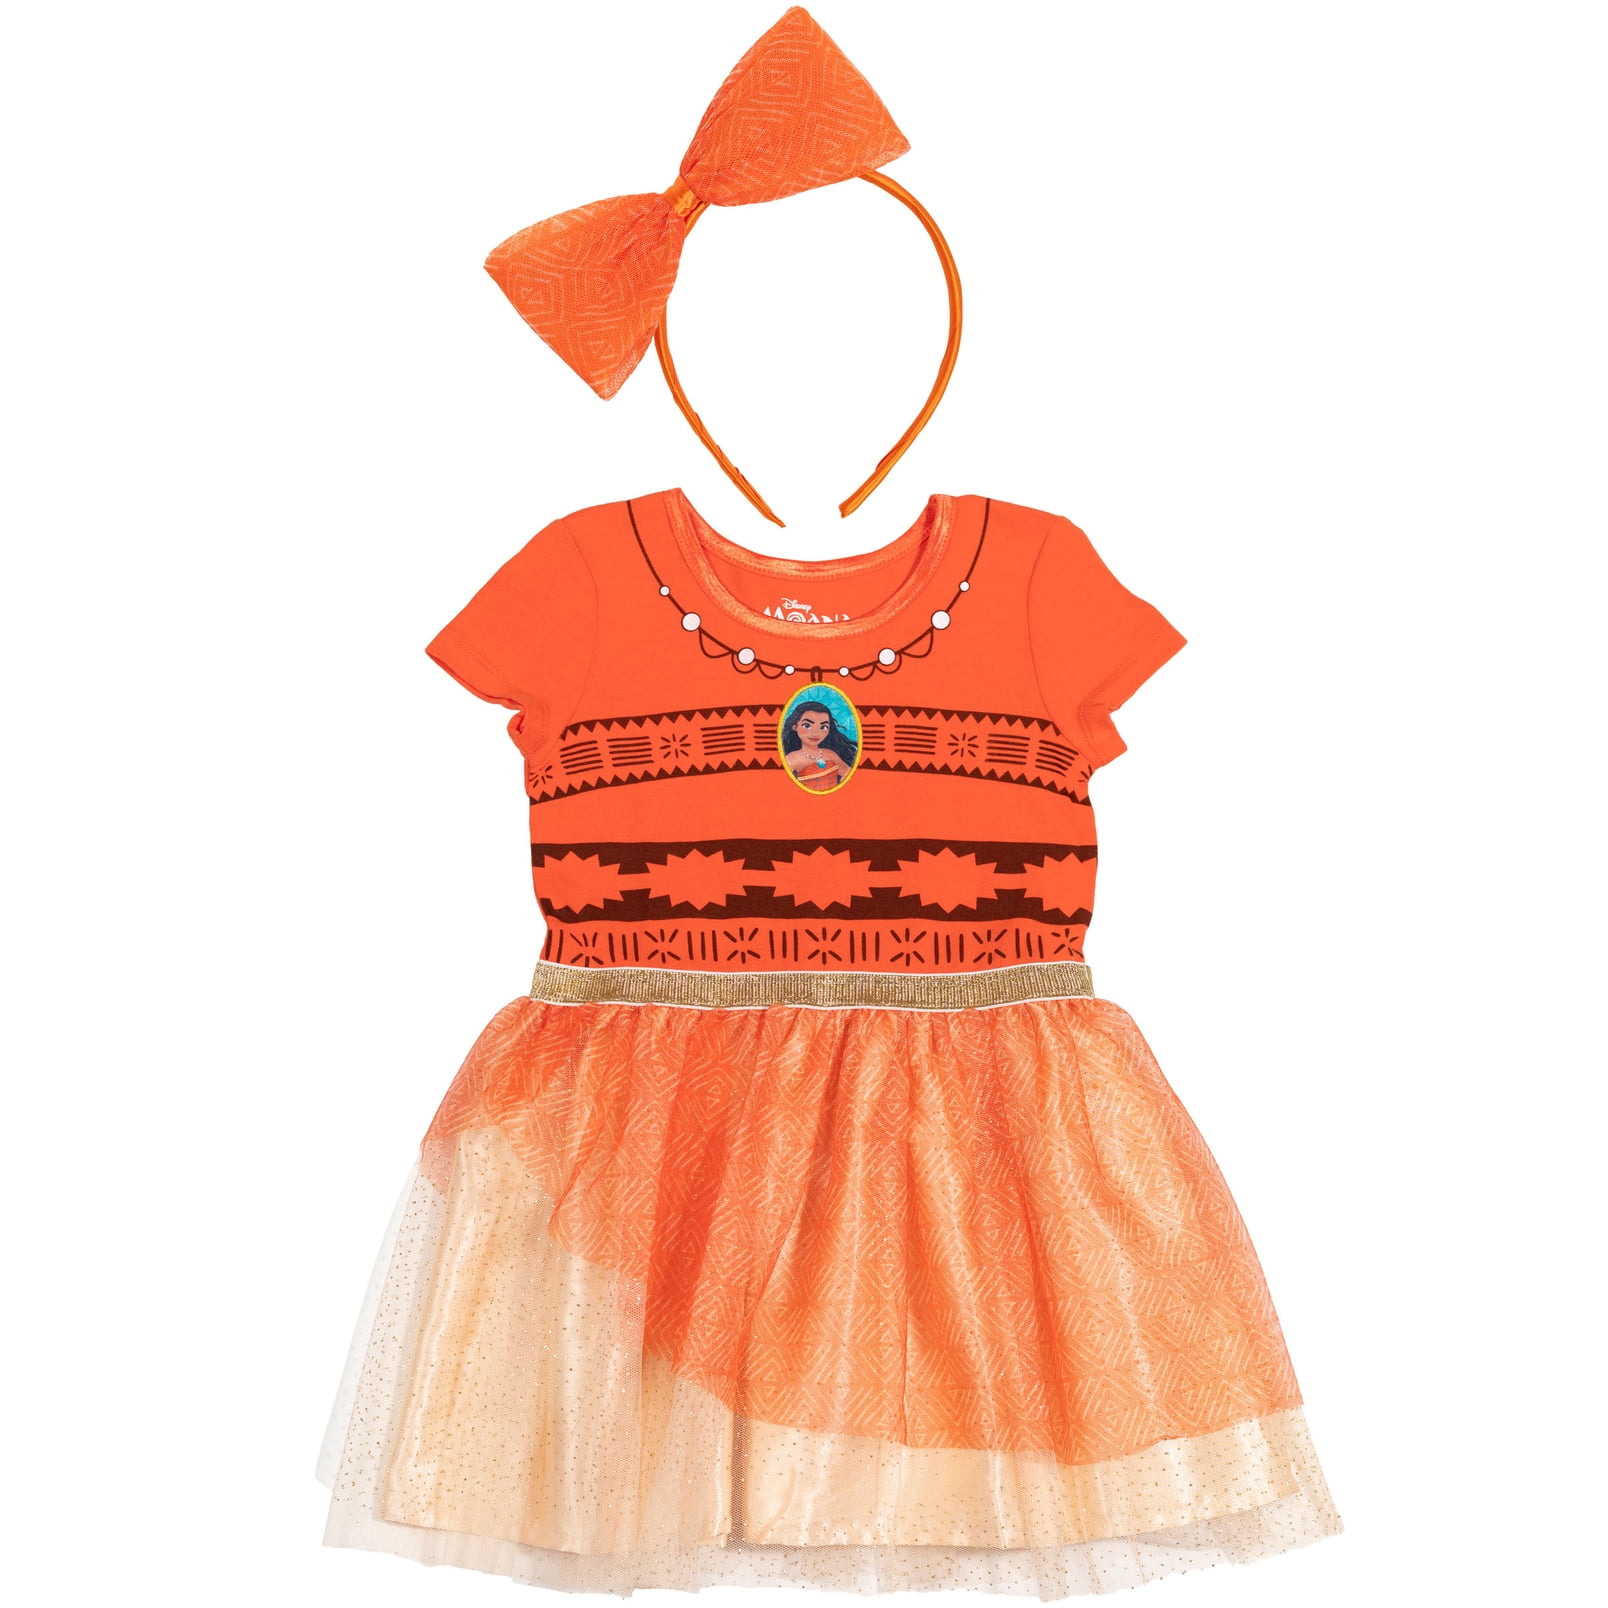 Sweet Vaiana Baby Dress Size 80 86